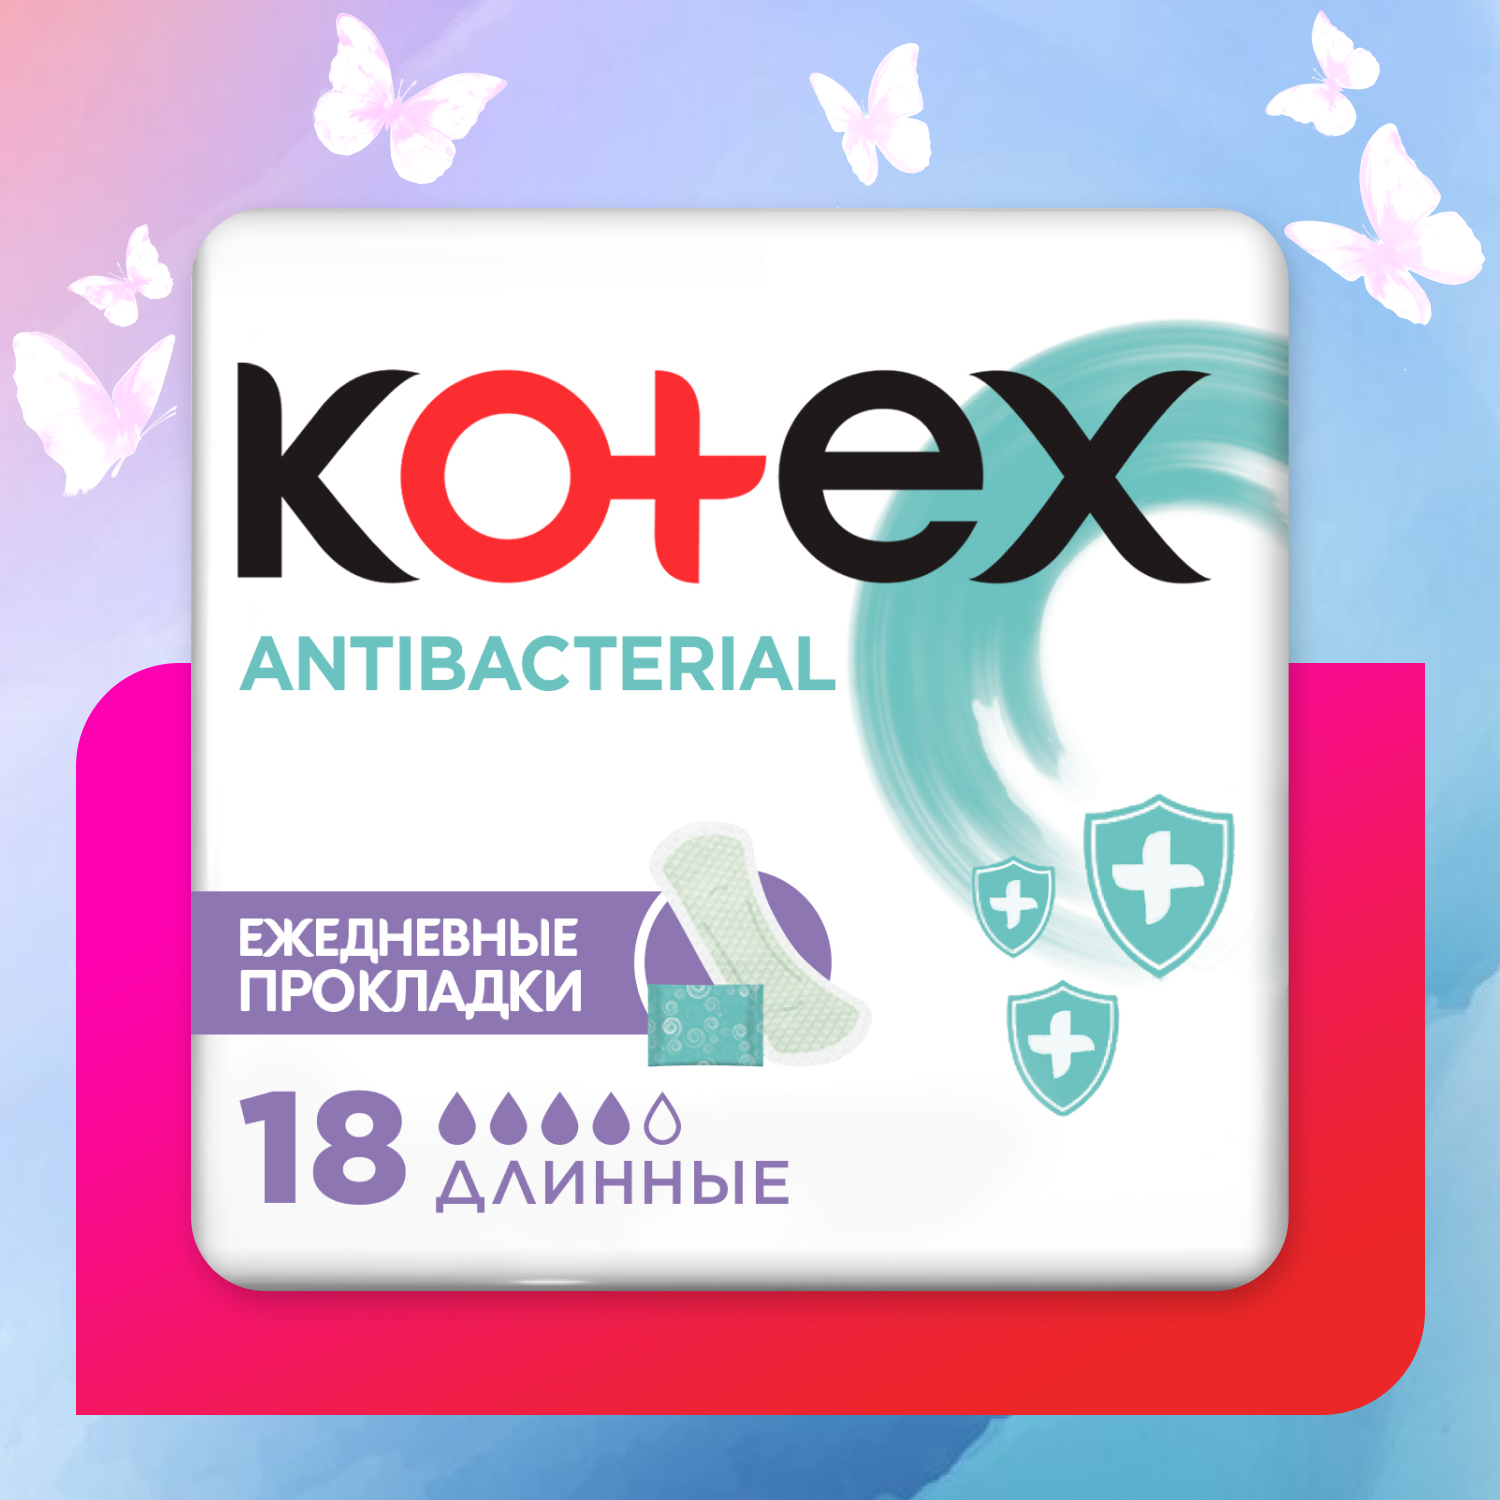 Прокладки ежедневные Kotex Antibacterial длинные 18шт - фото 1